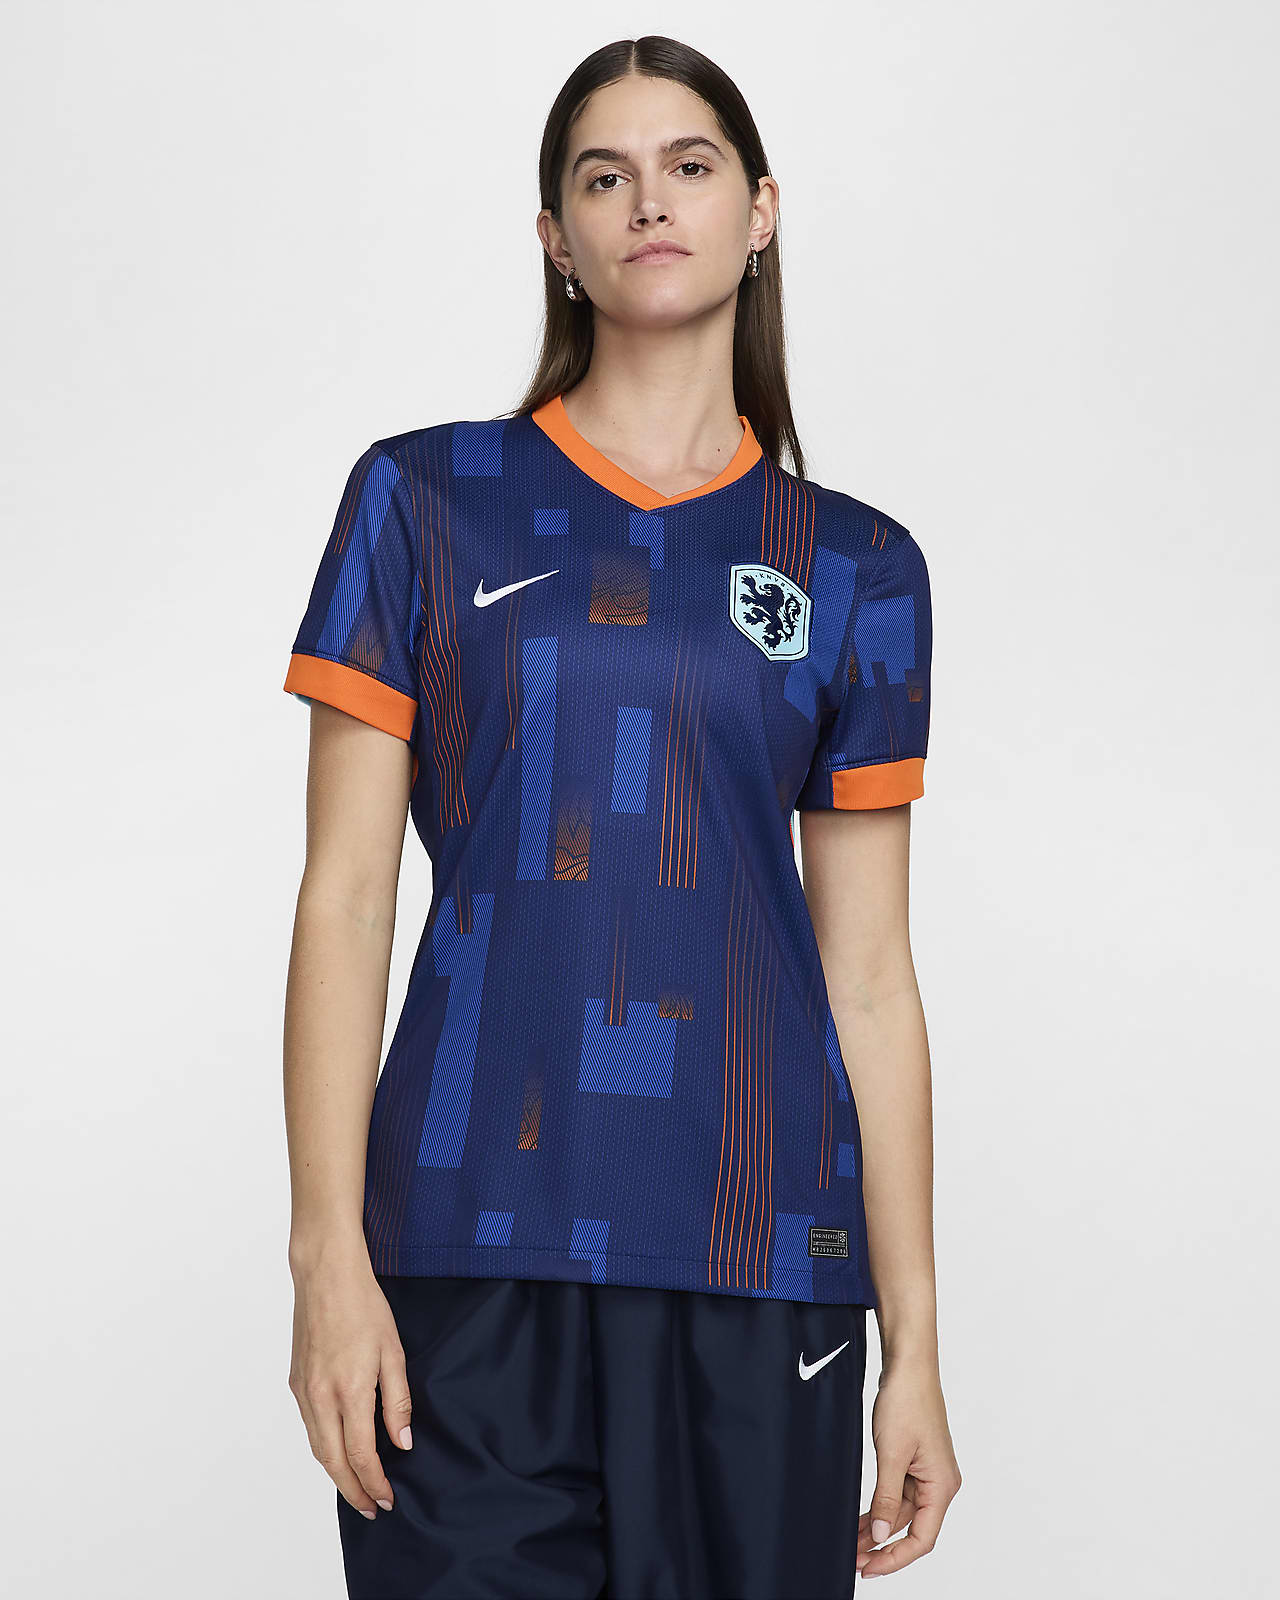 Εκτός έδρας γυναικεία ποδοσφαιρική φανέλα Nike Dri-FIT Replica Κάτω Χώρες 2024/25 Stadium (ανδρική ομάδα)